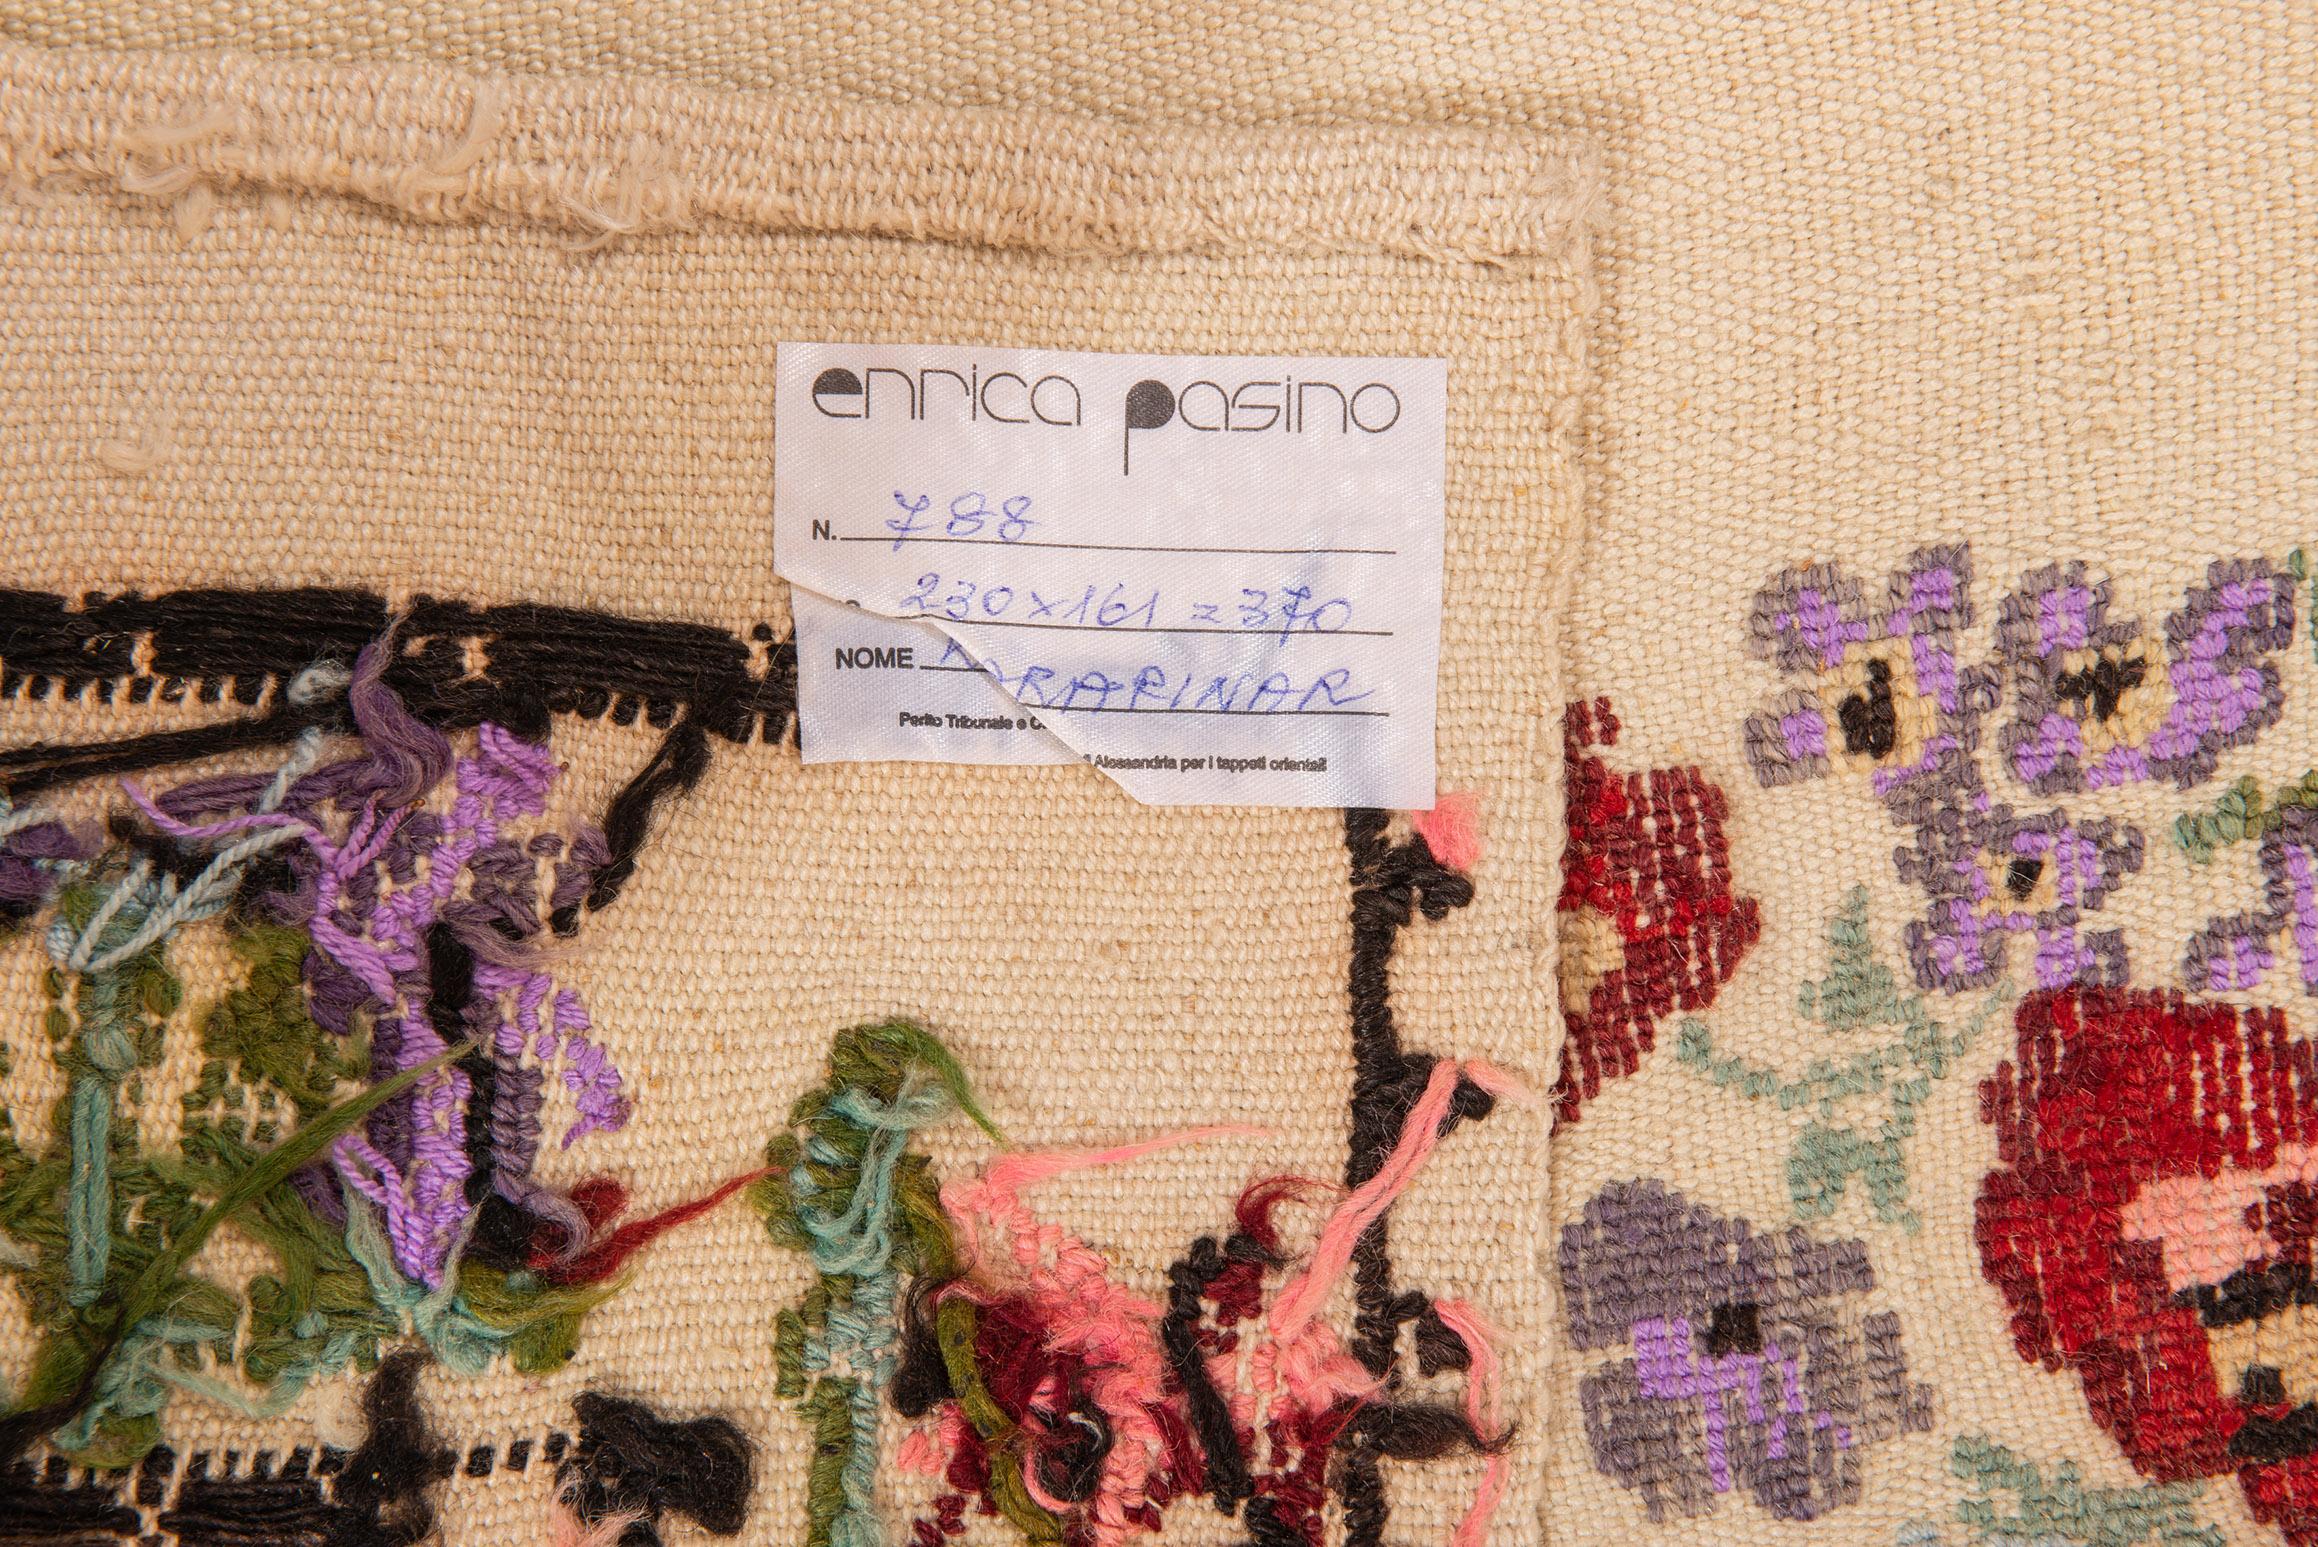 Nr. 788 - Handbestickter Teppich oder Stoff von jungen türkischen Nomadenmädchen für ihre Hochzeitsaussteuer. Flachwellen-Kelim: Dies ist kein echter Teppich, sondern ein von jungen türkischen Nomadenmädchen gefertigter Stoff, der sehr selten